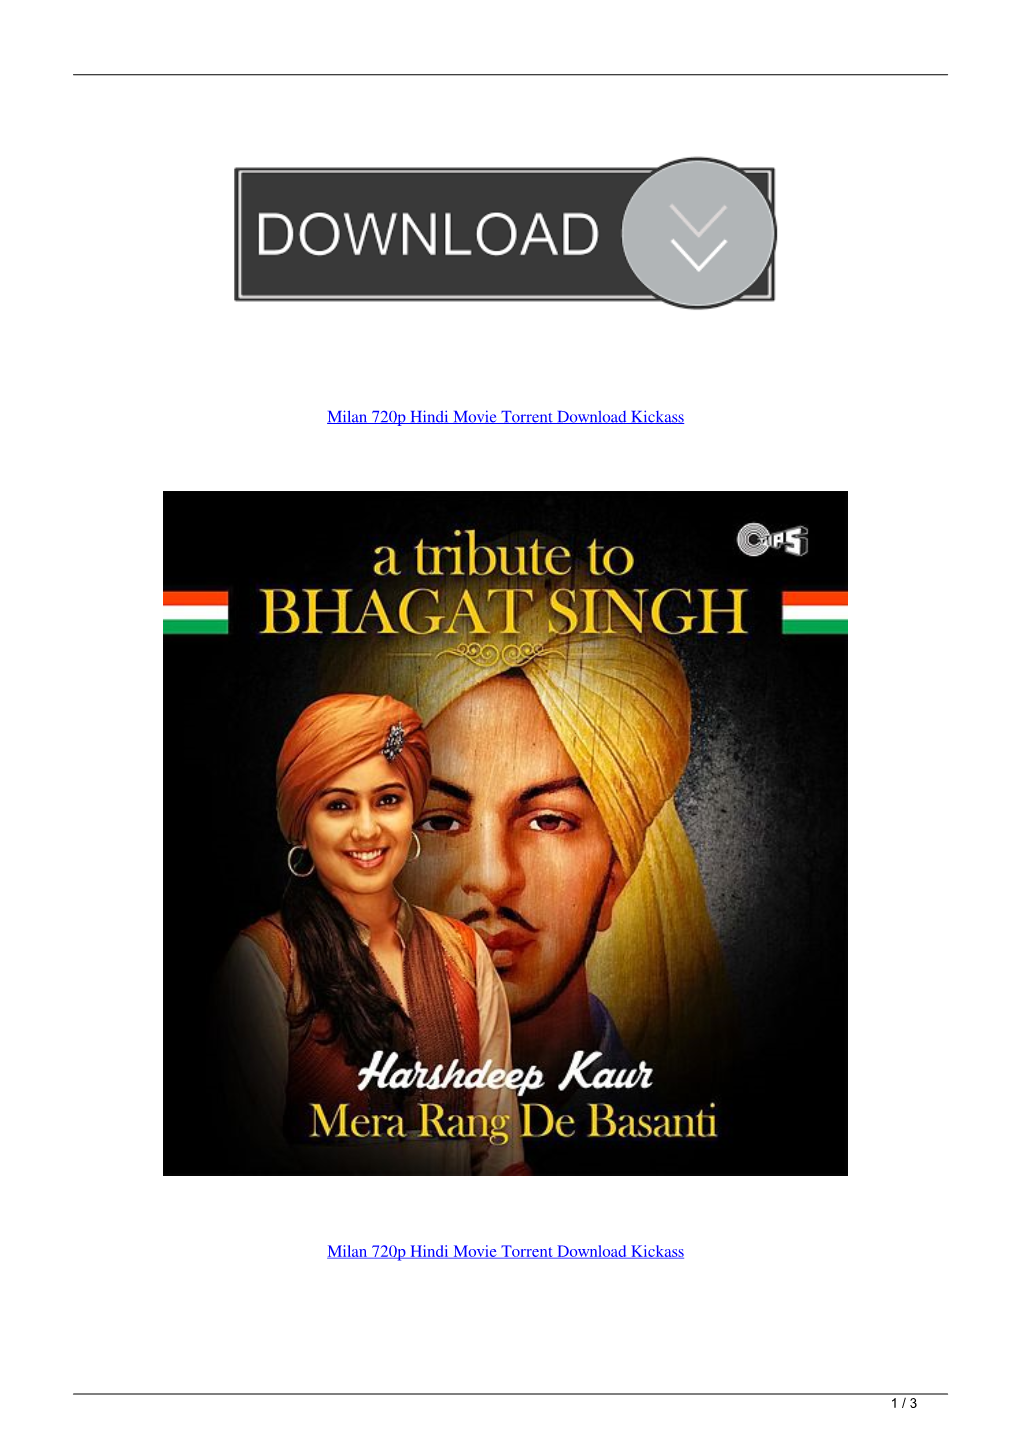 Milan 720P Hindi Movie Torrent Download Kickass